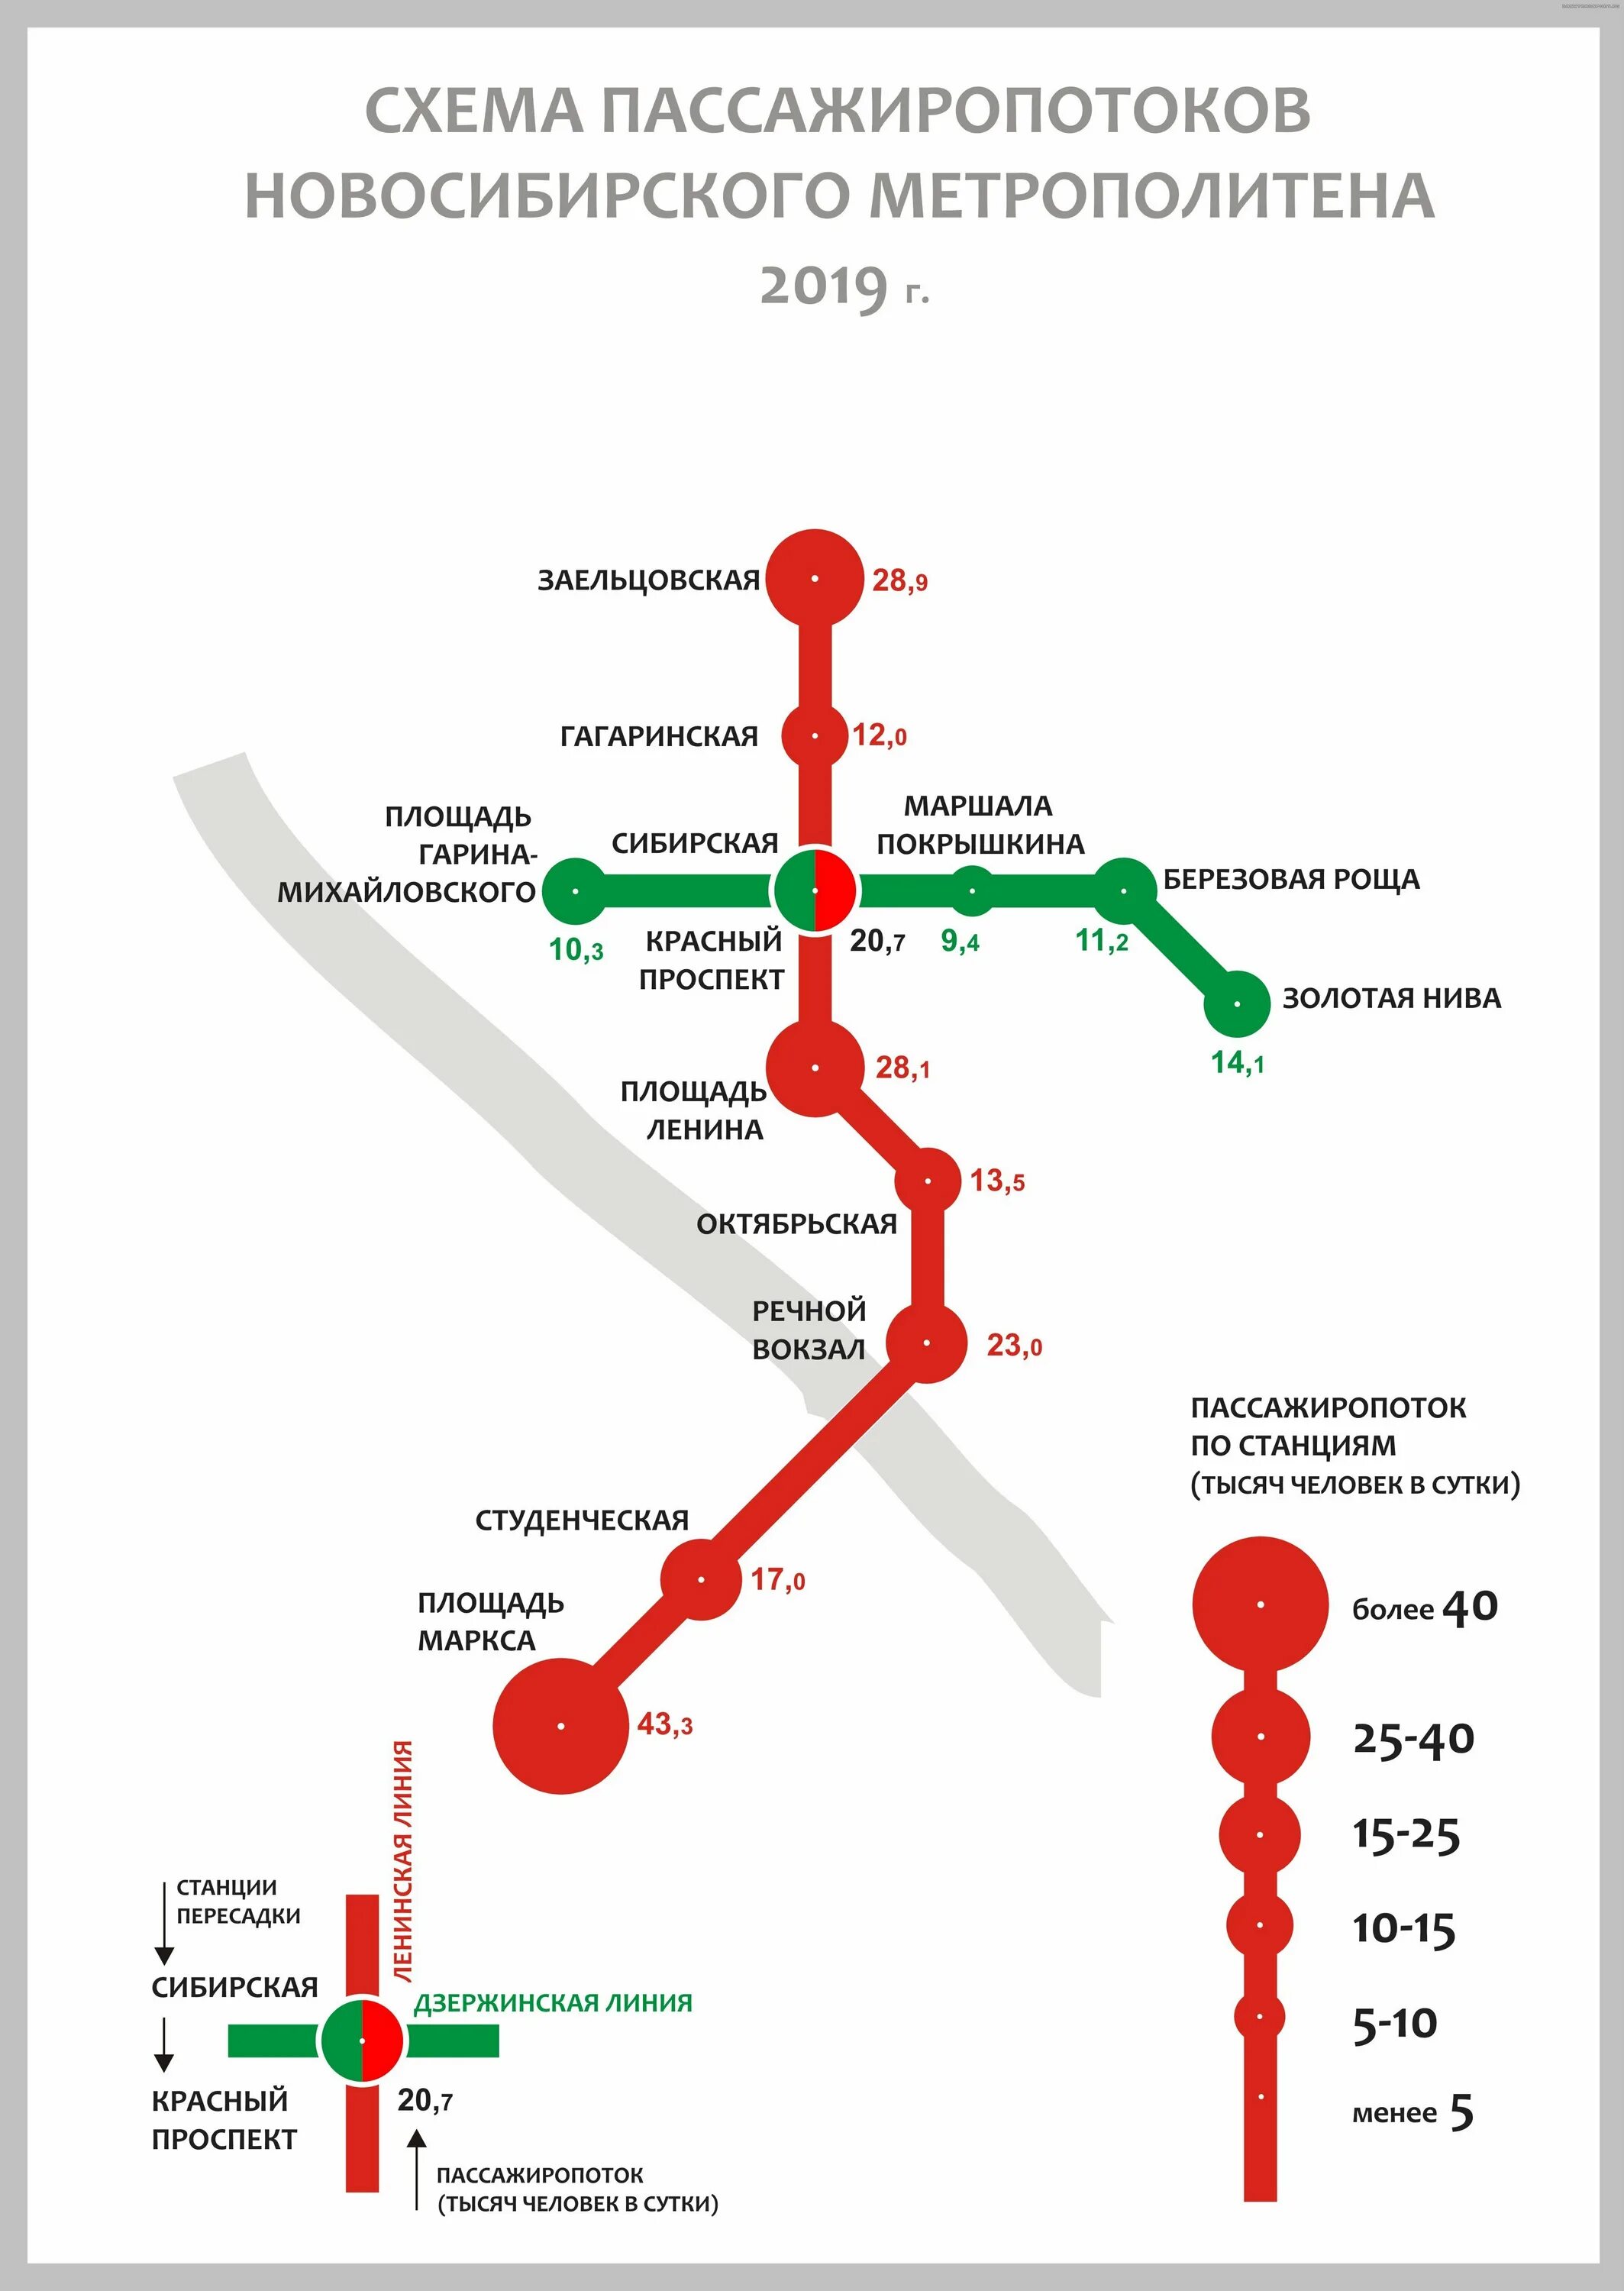 Схема метро Новосибирска 2020. Метро Новосибирск схема линий. Метро Новосибирска схема 2019. Метрополитен Новосибирск схема 2020.